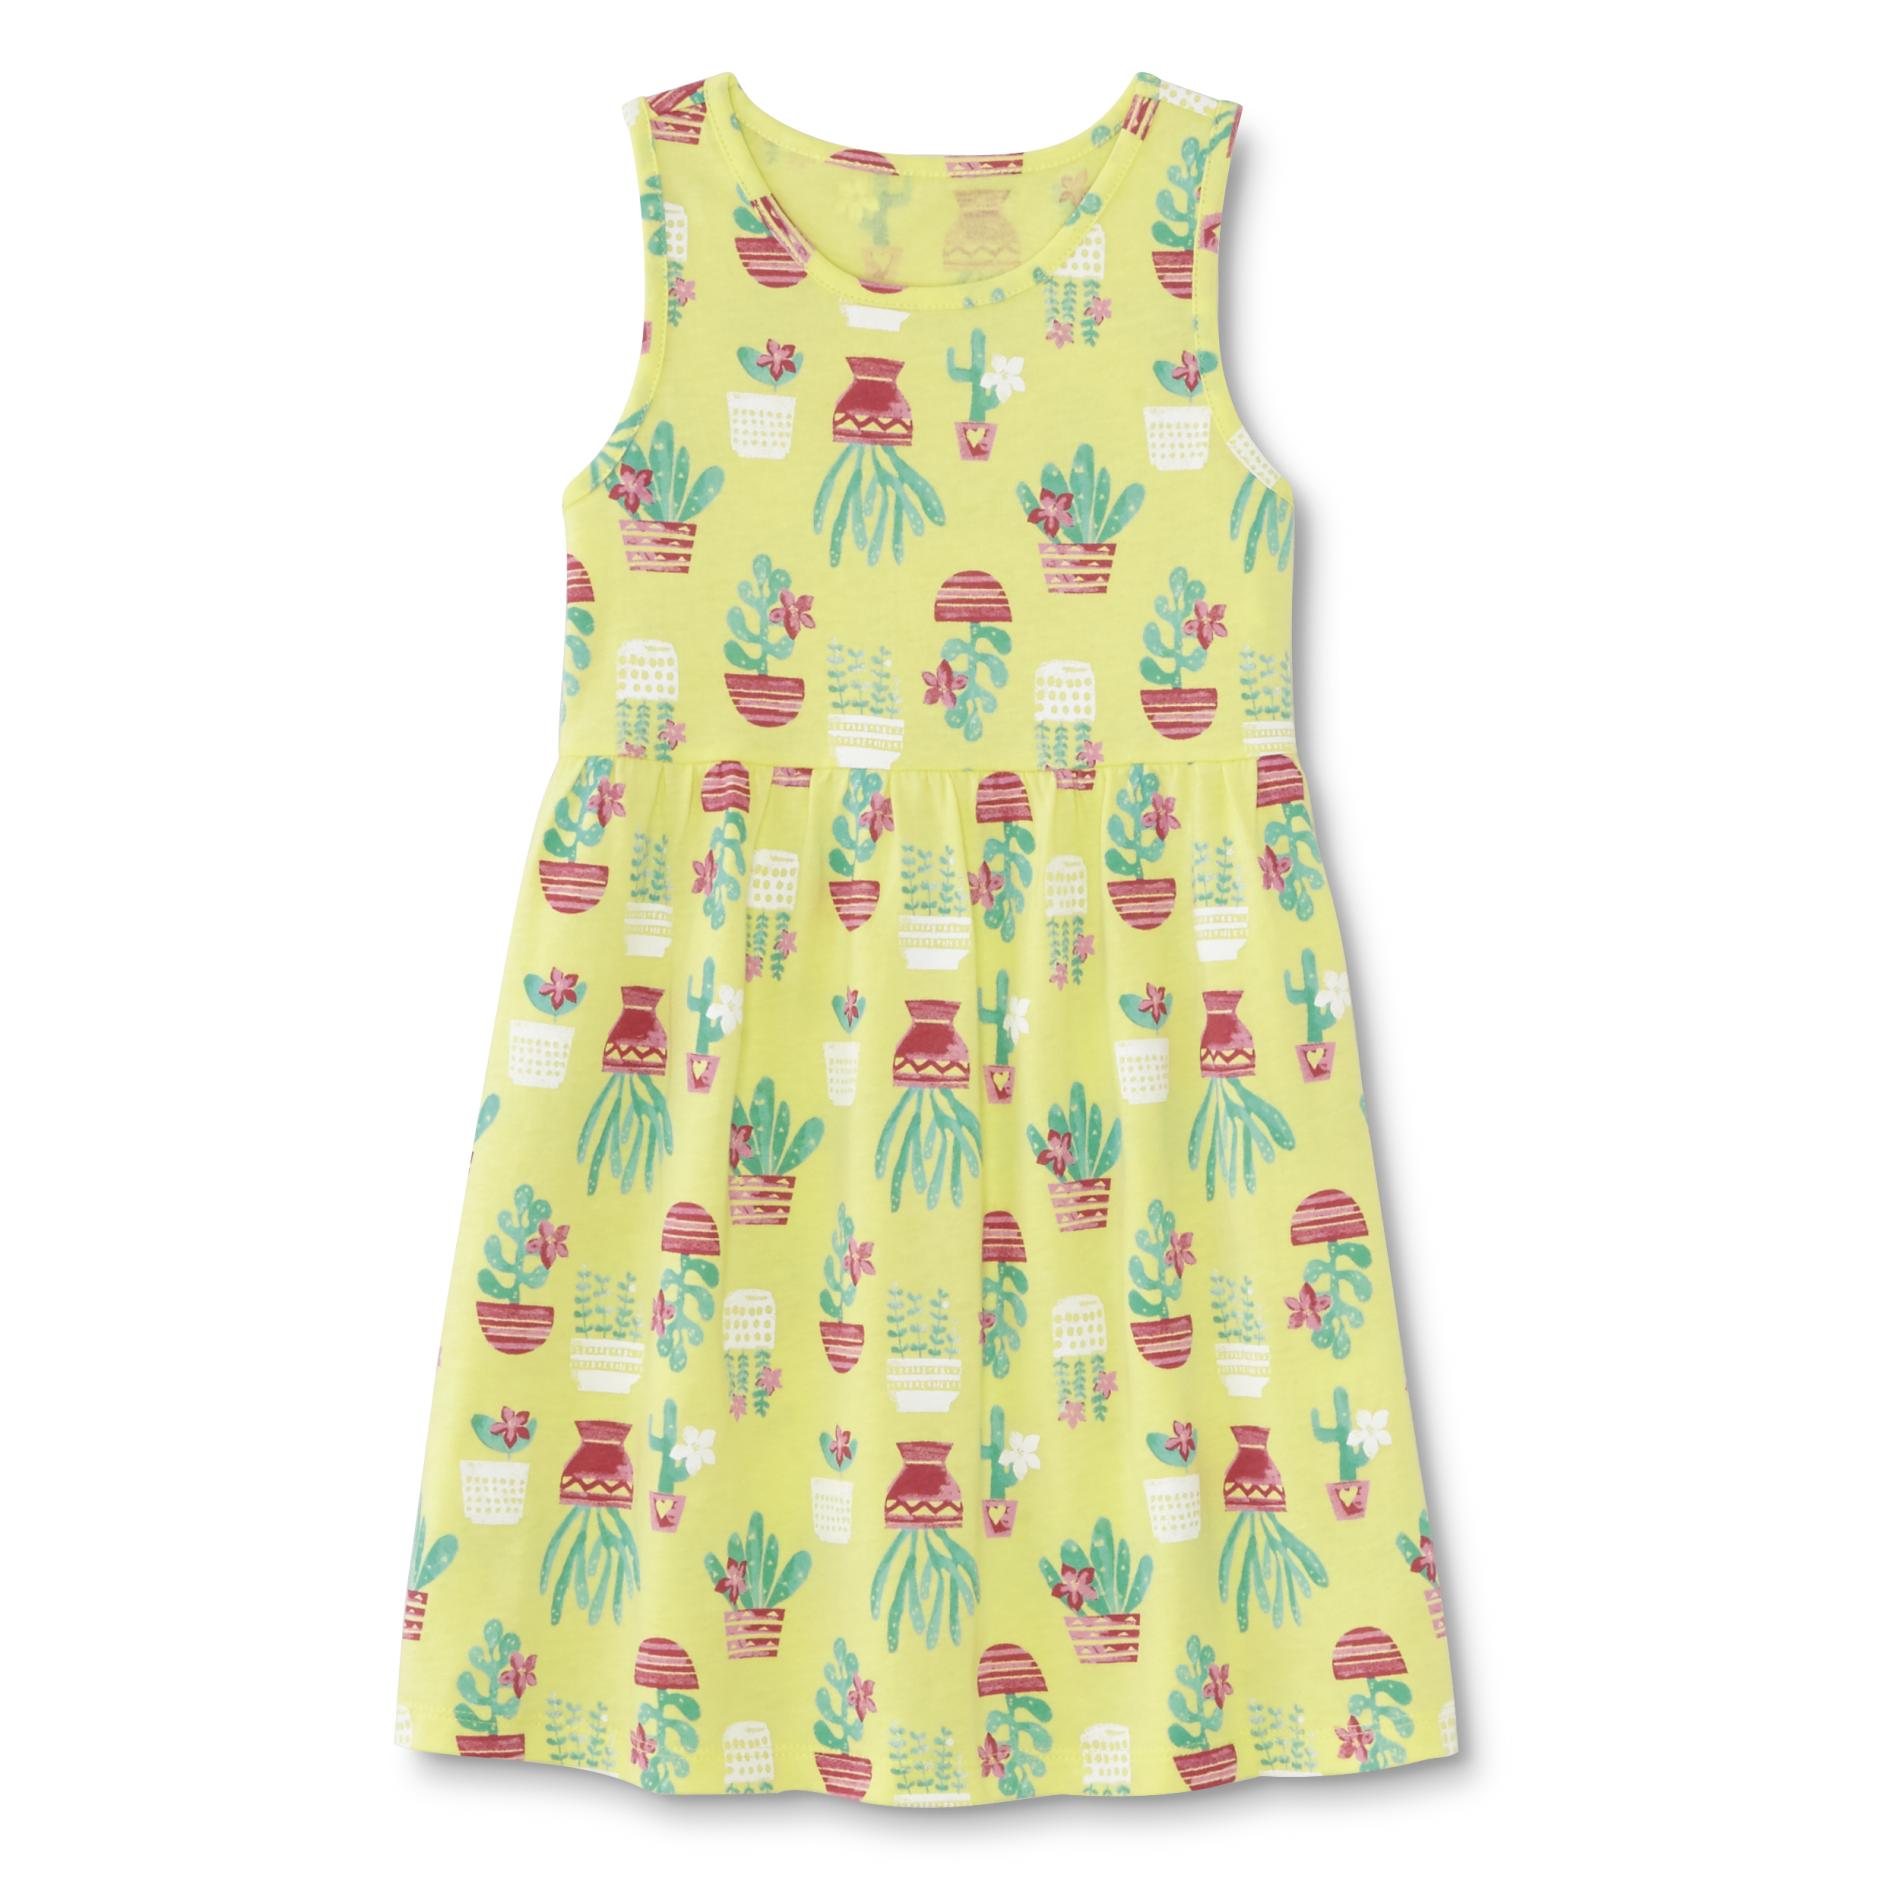 Toughskins Infant & Toddler Girl's Tank Dress - Cactus